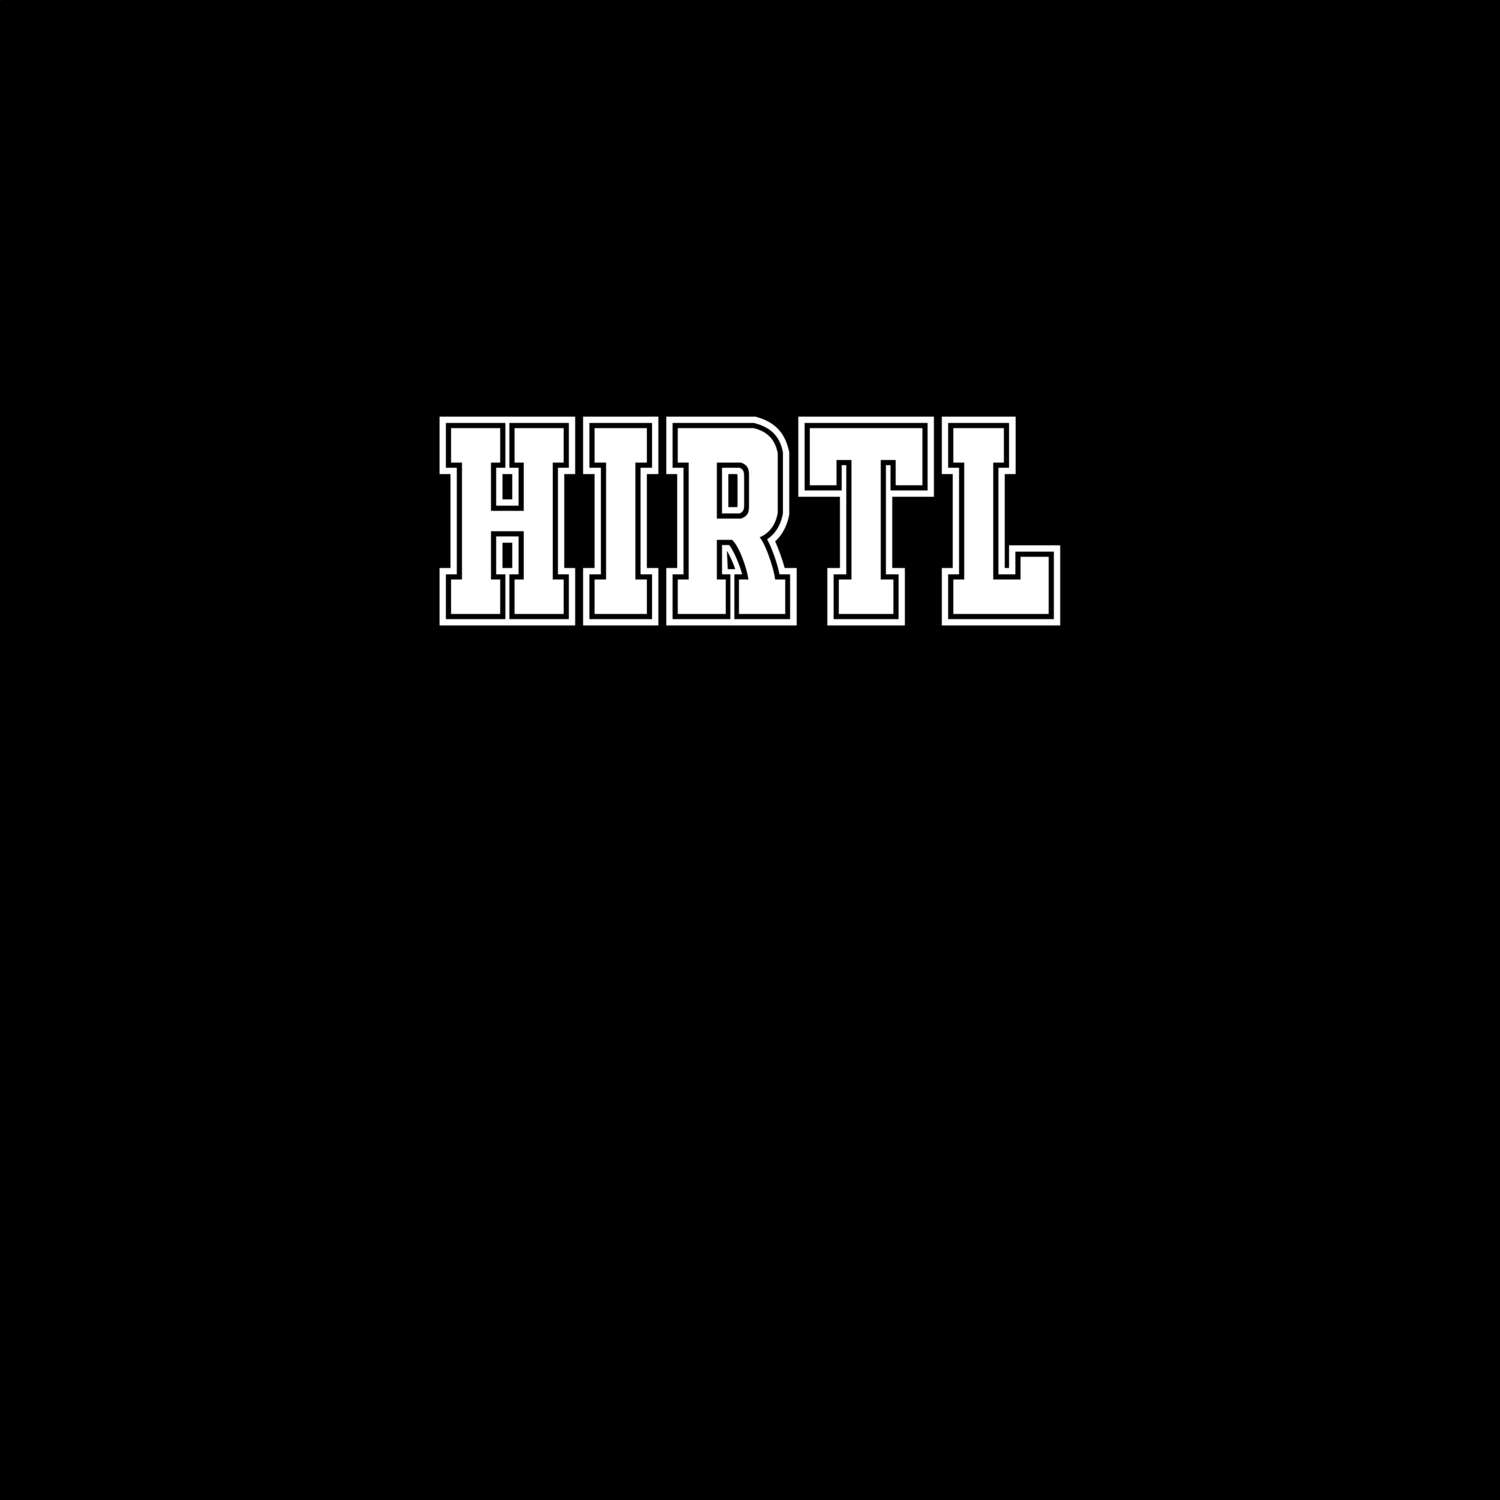 Hirtl T-Shirt »Classic«